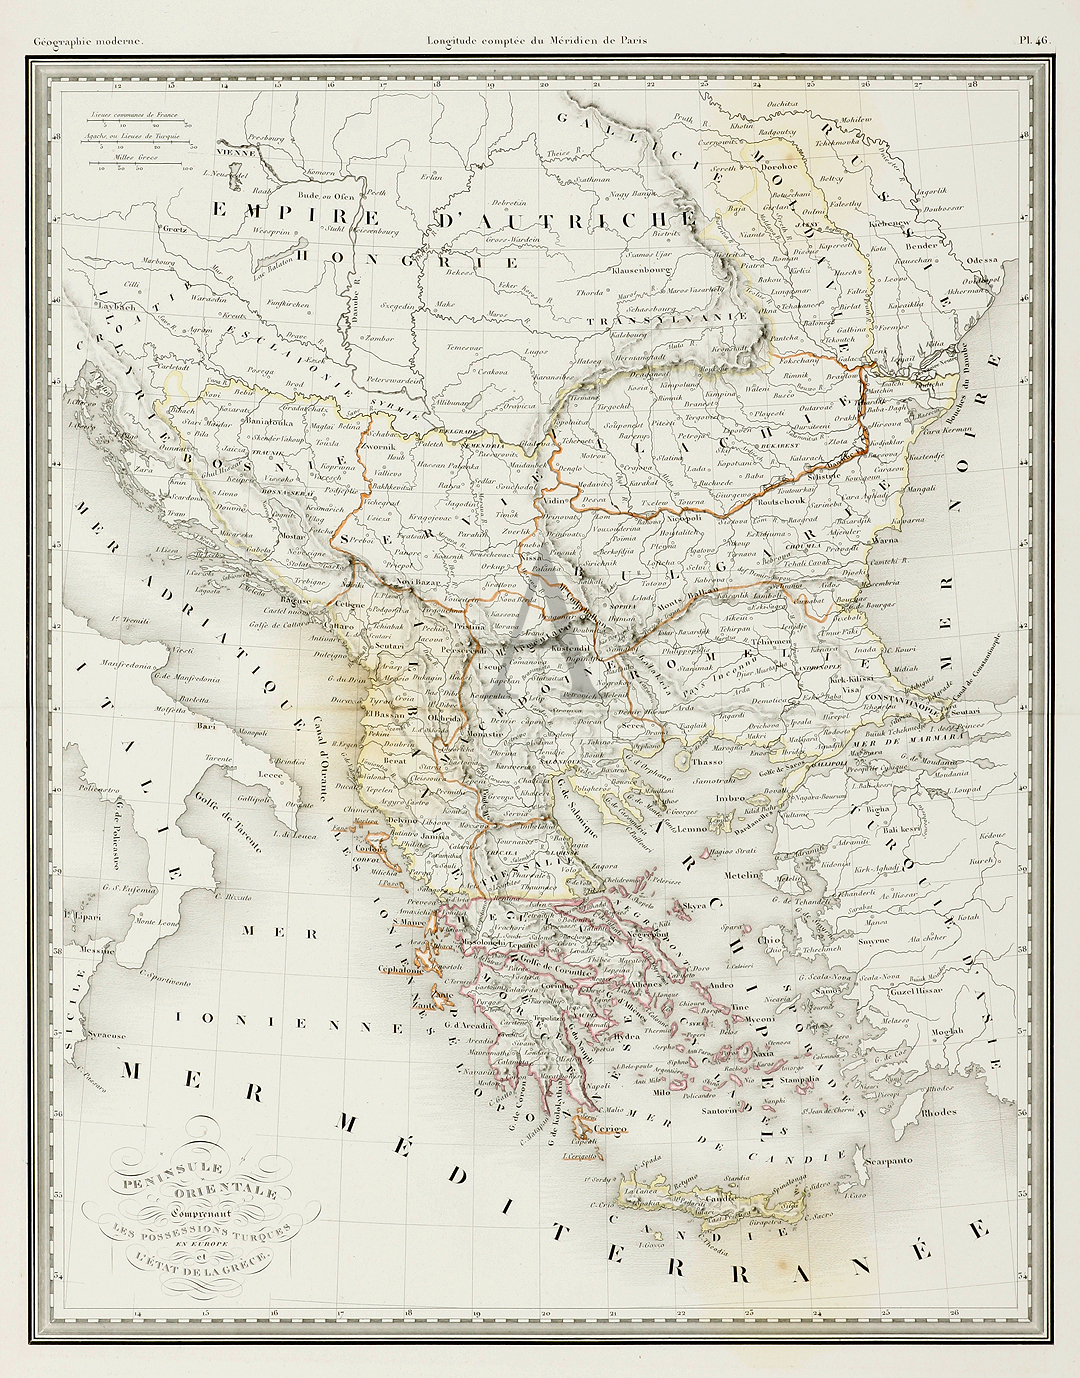 Peninsule Orientale Comprenant Les Possessions Turques en Europe et L'Etat De La Grece - Antique Print from 1834